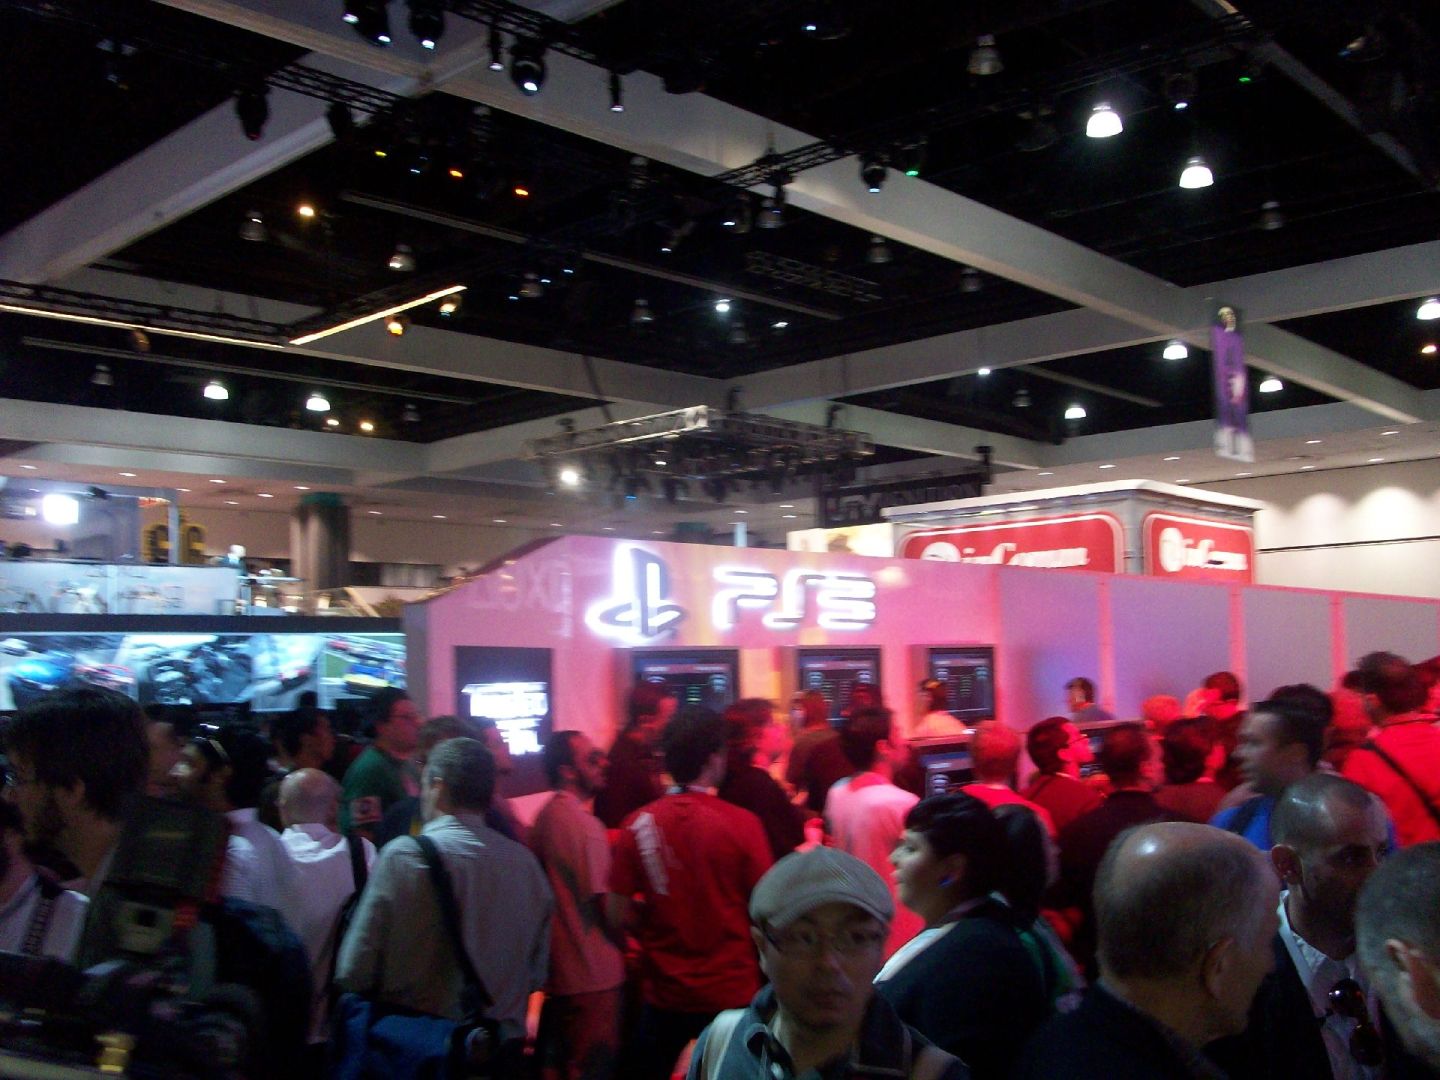 PlayStation at E3 2010